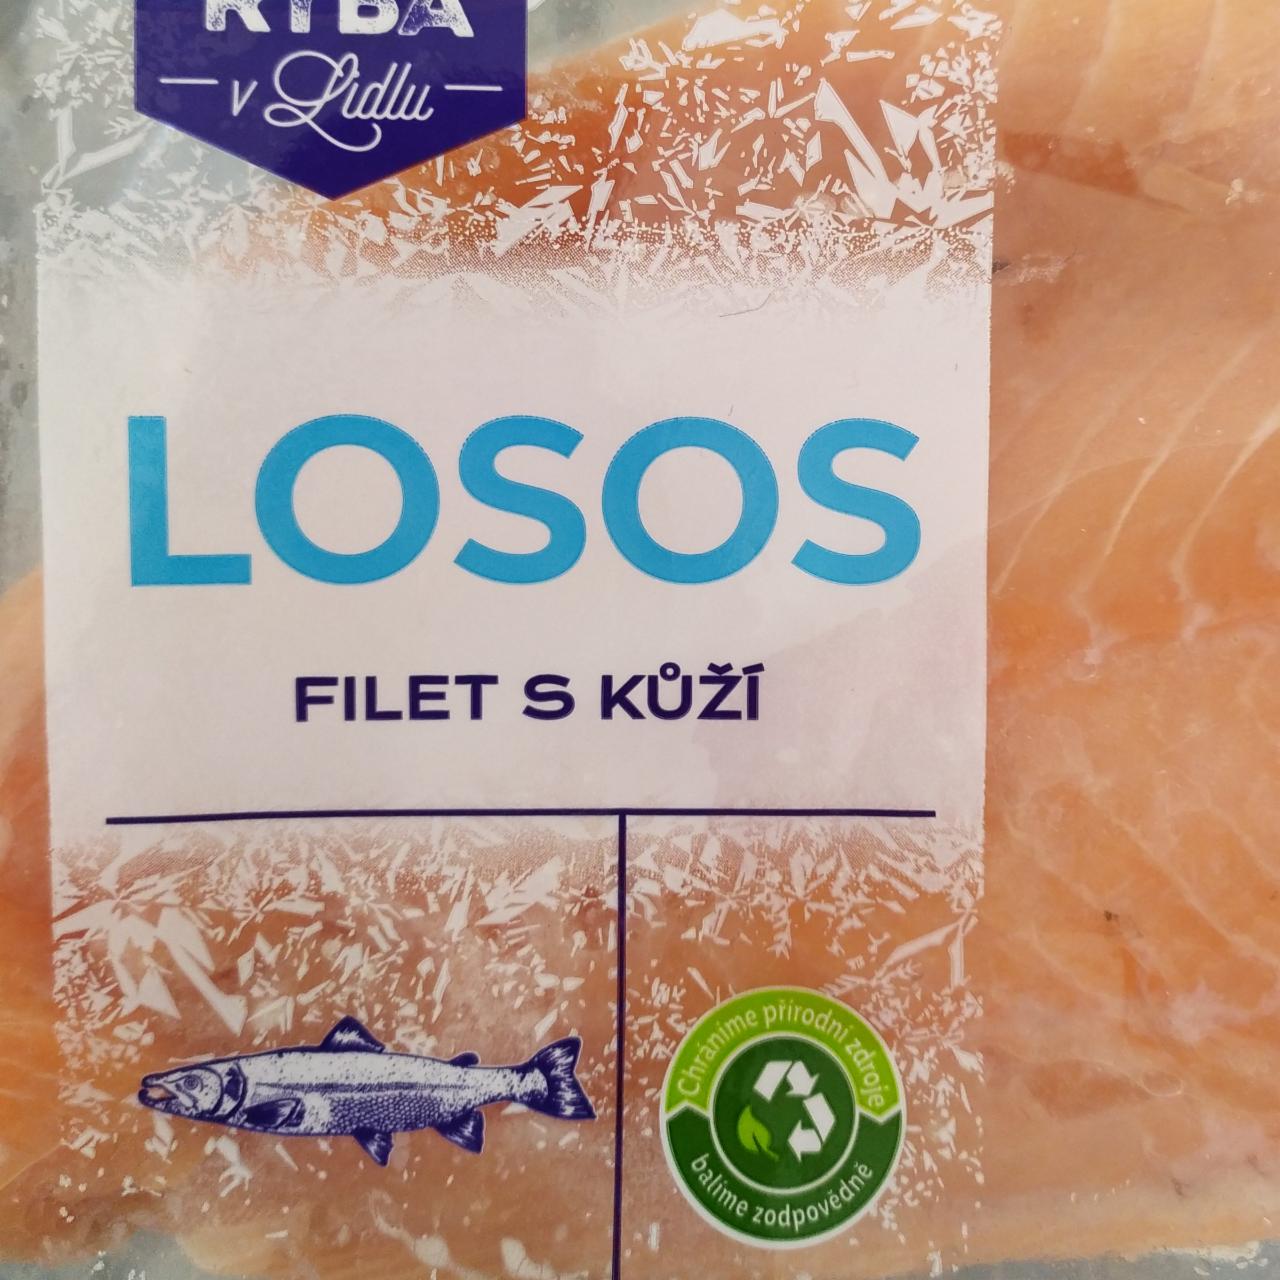 Fotografie - Losos filet s kůží Čerstvá ryba v Lidlu